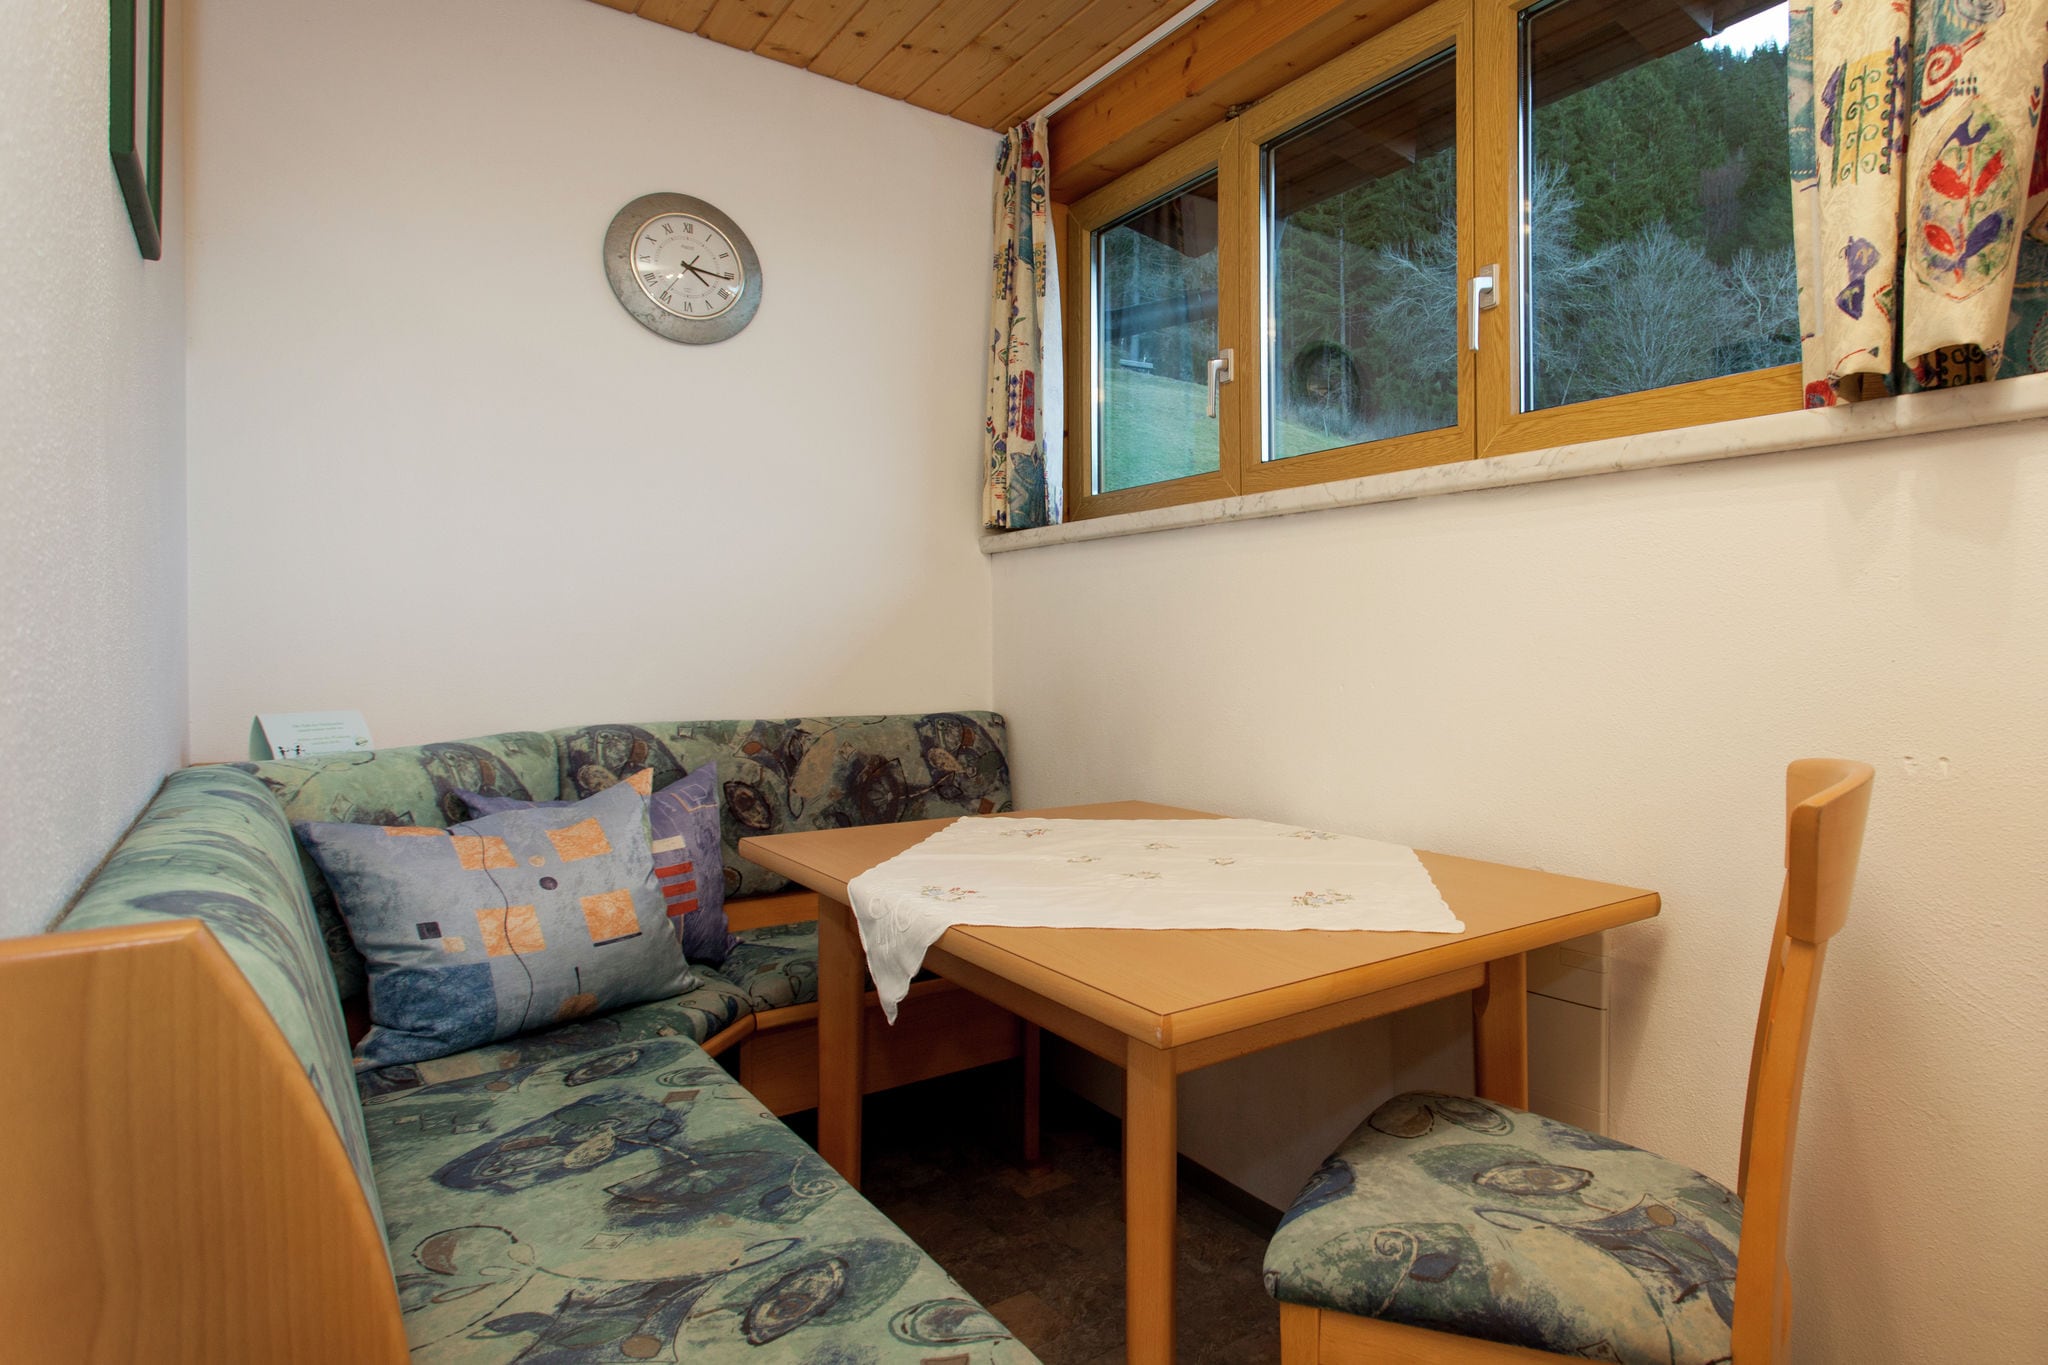 Appartement in Montafon in de buurt van skigebied